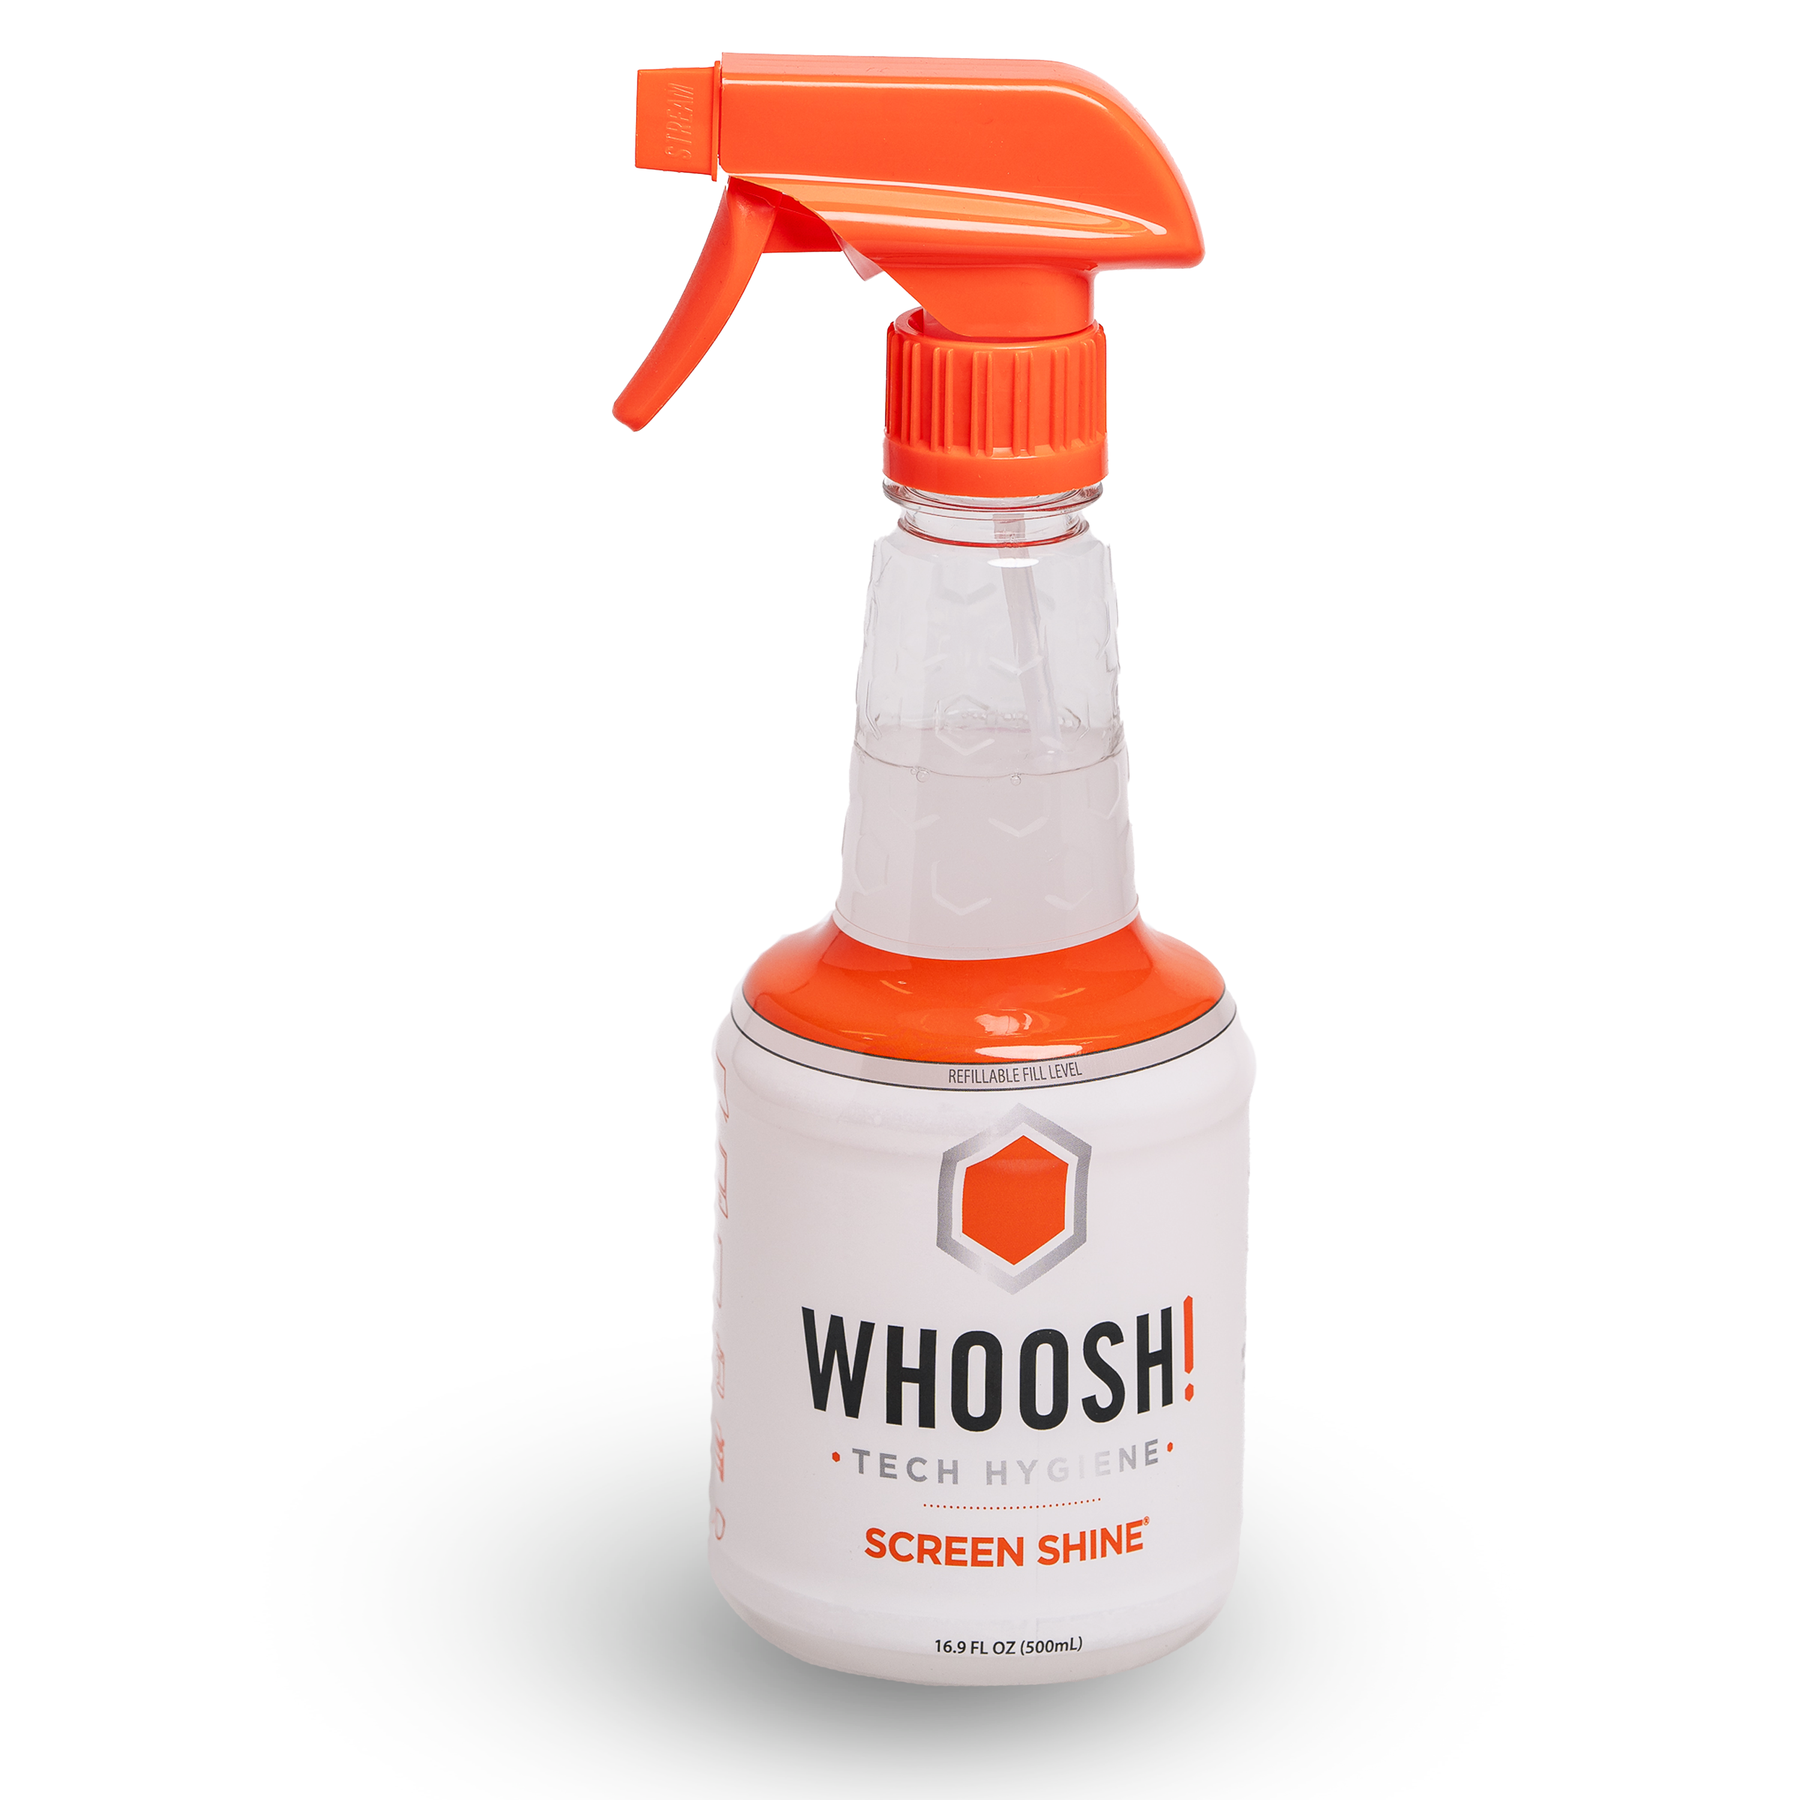 SCREEN SHINE PRO REFILLABLE bottle 16.9 Oz / 500ml - 12 UNITS – WHOOSH! B2B